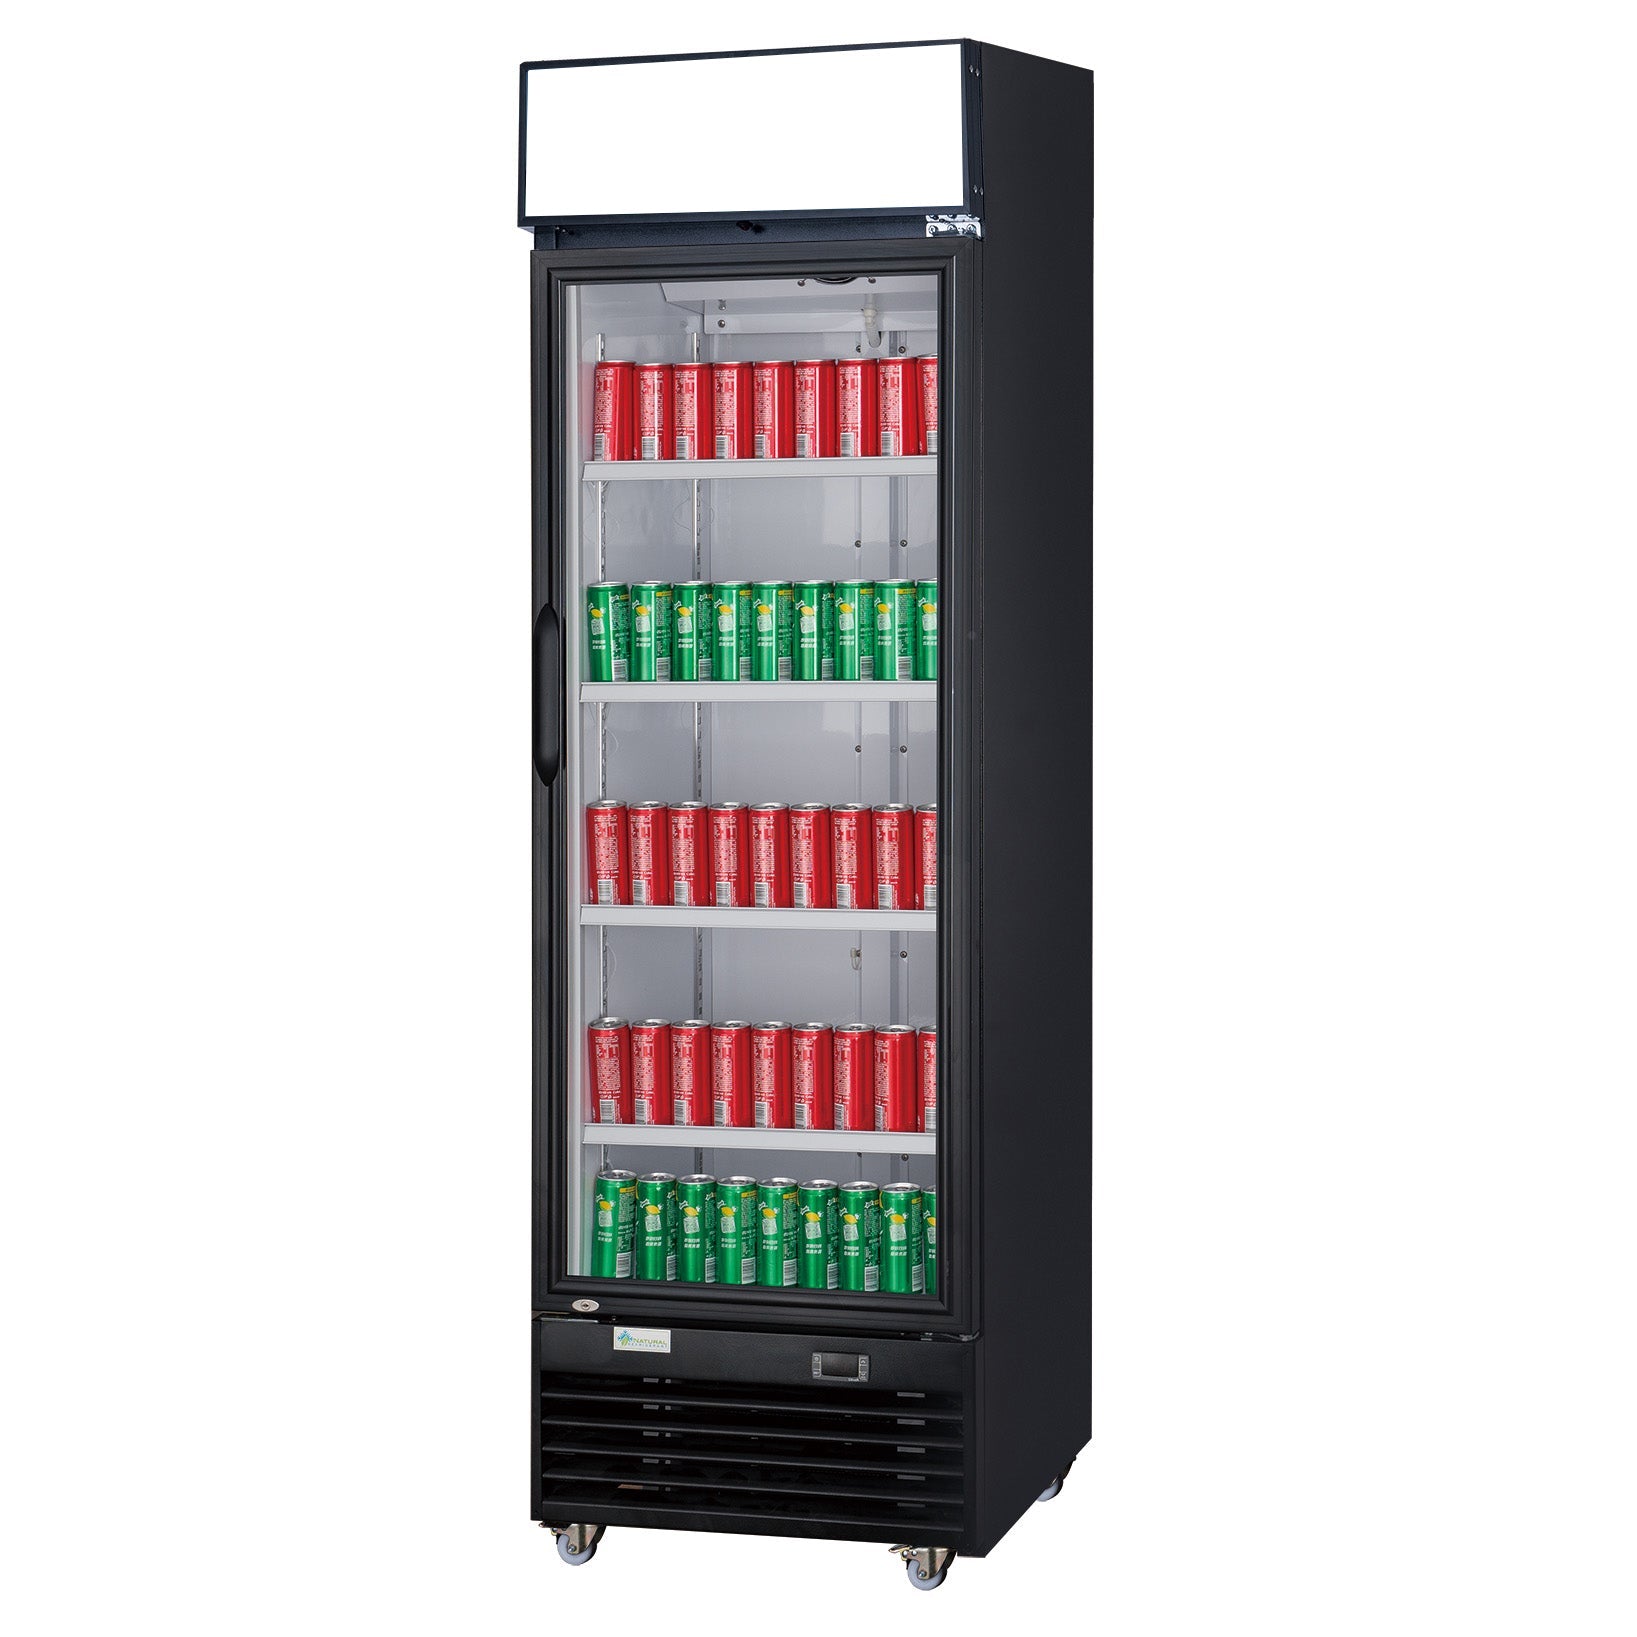 ChefAAA - TSM-12R Commercial Single Glass Swing Door Merchandiser Refrigerator